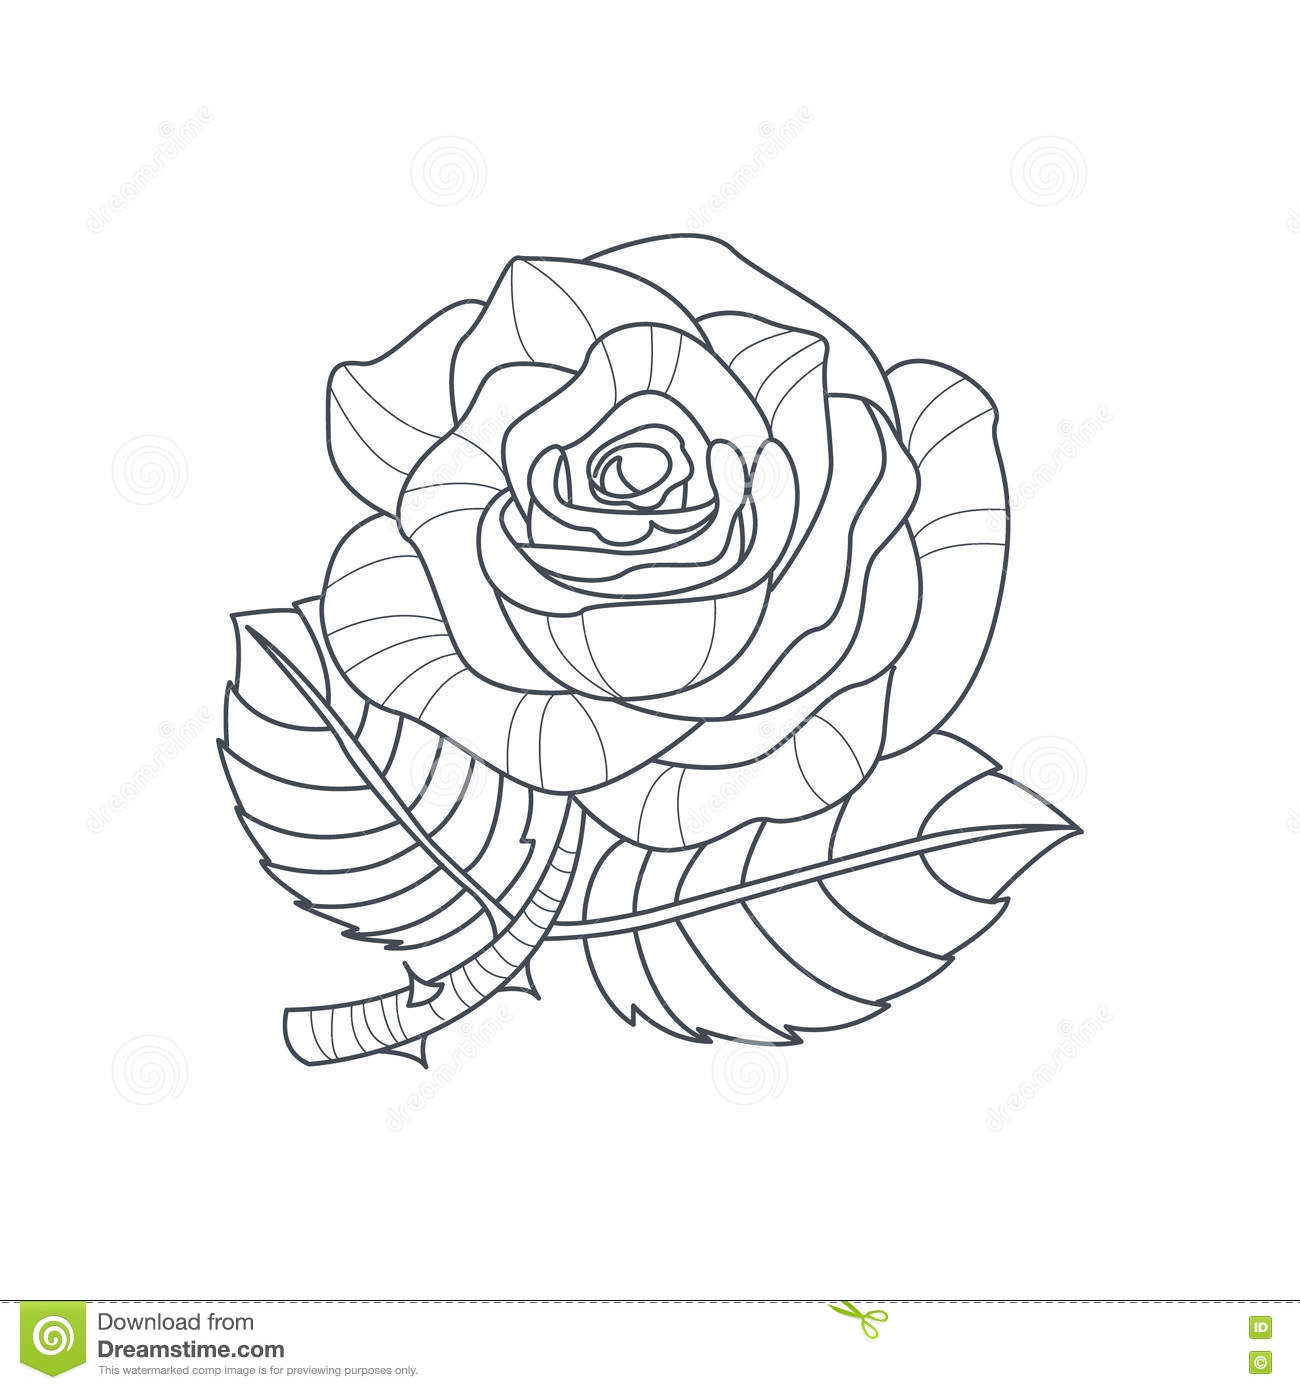 Livre De Coloriage De Rose Flower Monochrome Drawing For Illustration à Coloriage De Rose Rouge 